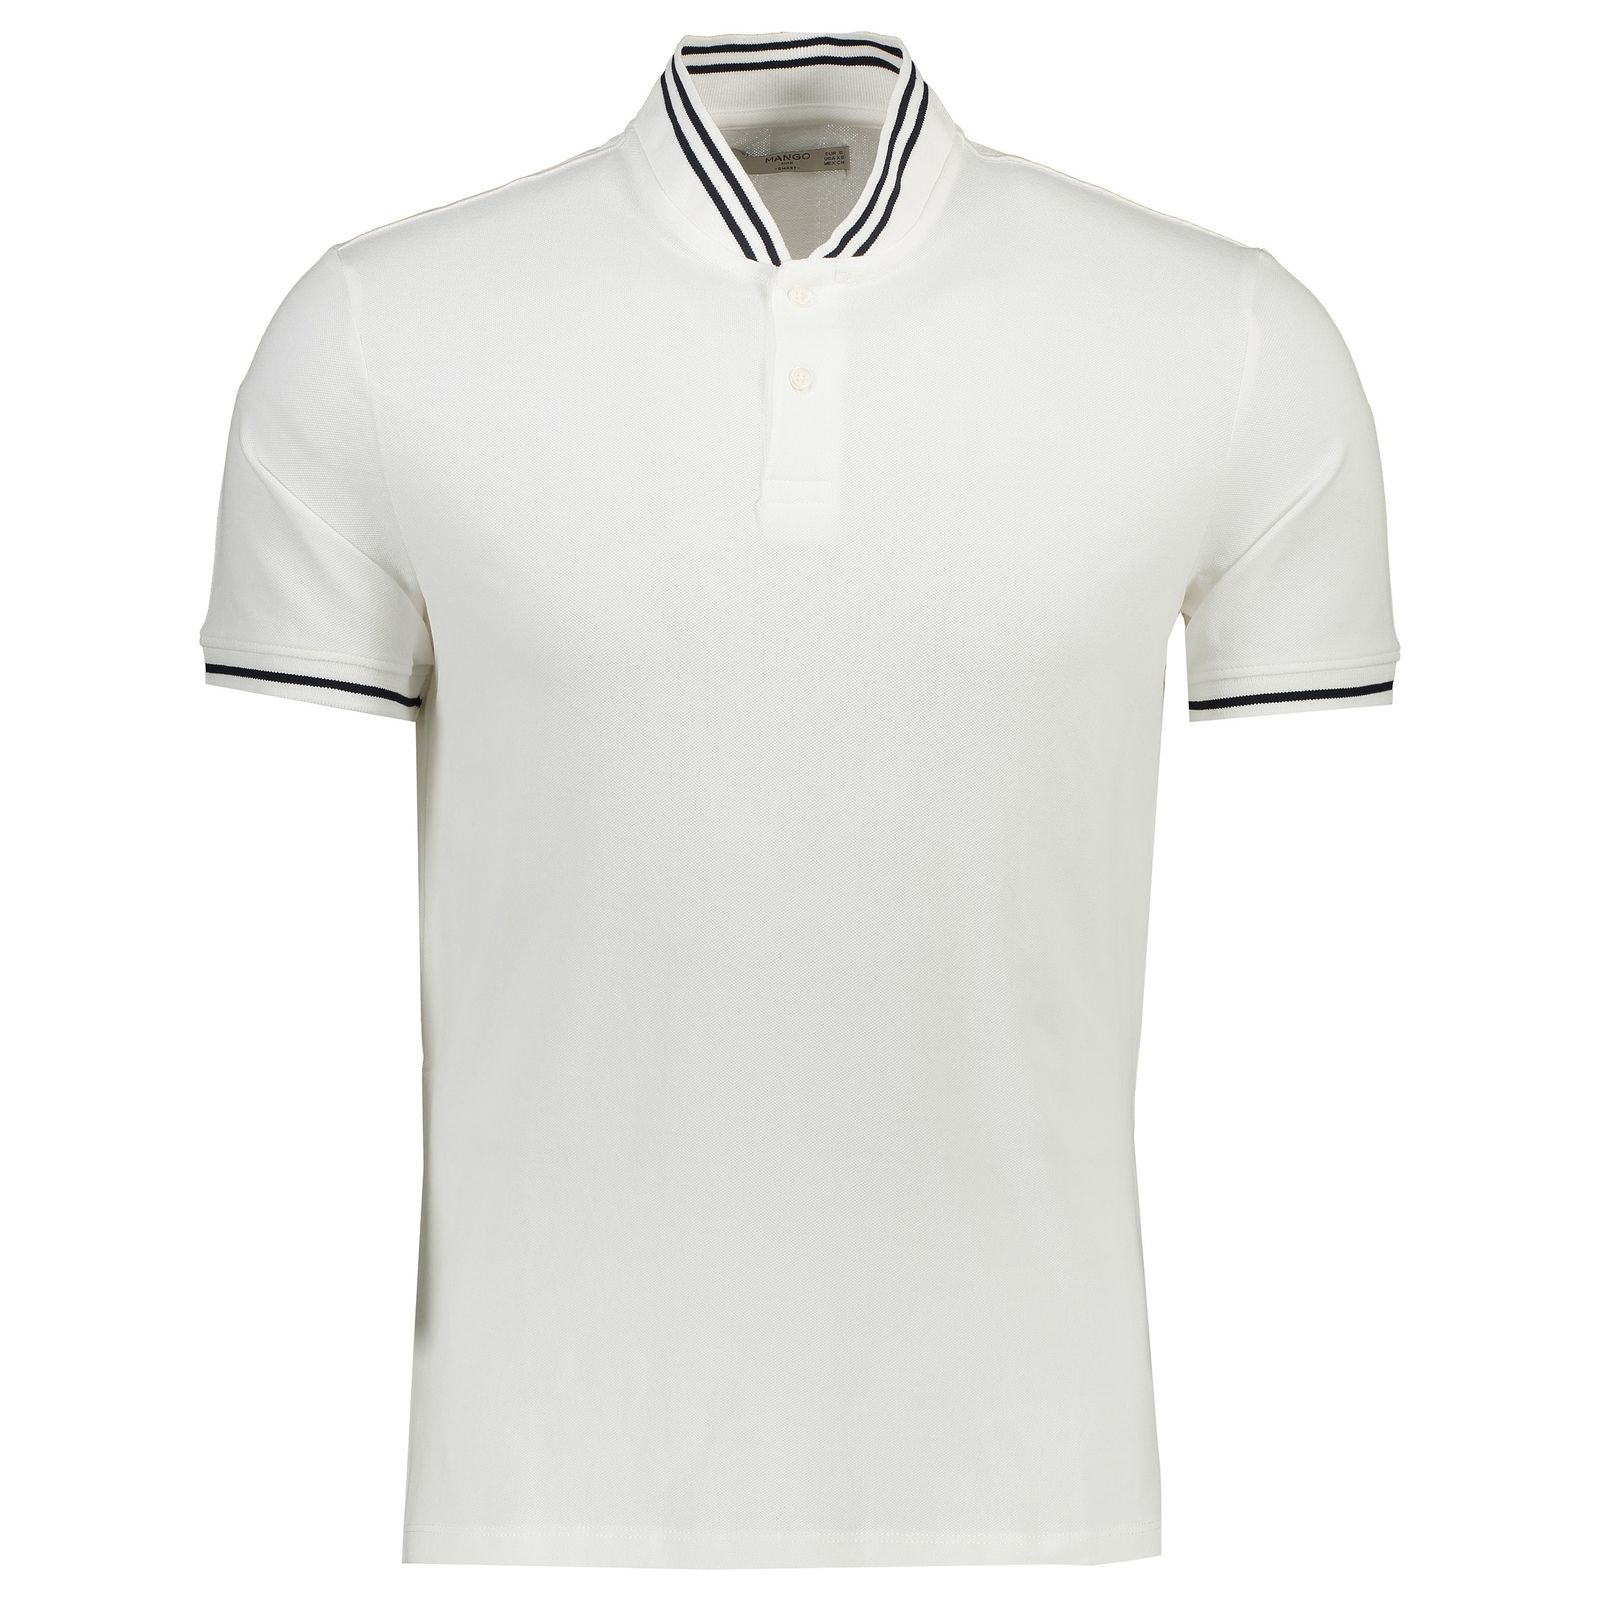 تی شرت نخی آستین کوتاه مردانه - مانگو - سفید - 1